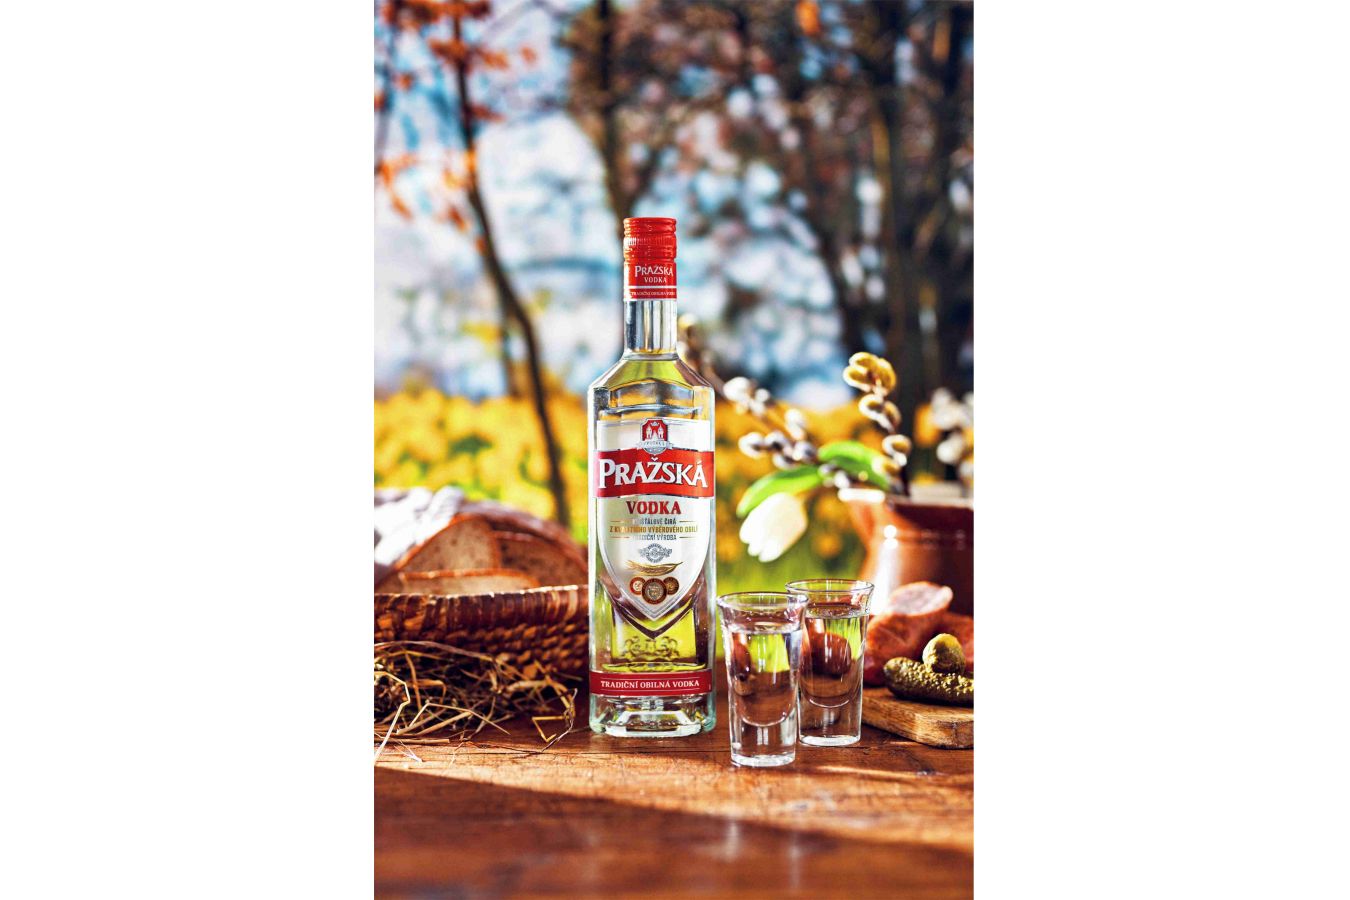 Jedinečná Pražská vodka je vyráběna v Česku